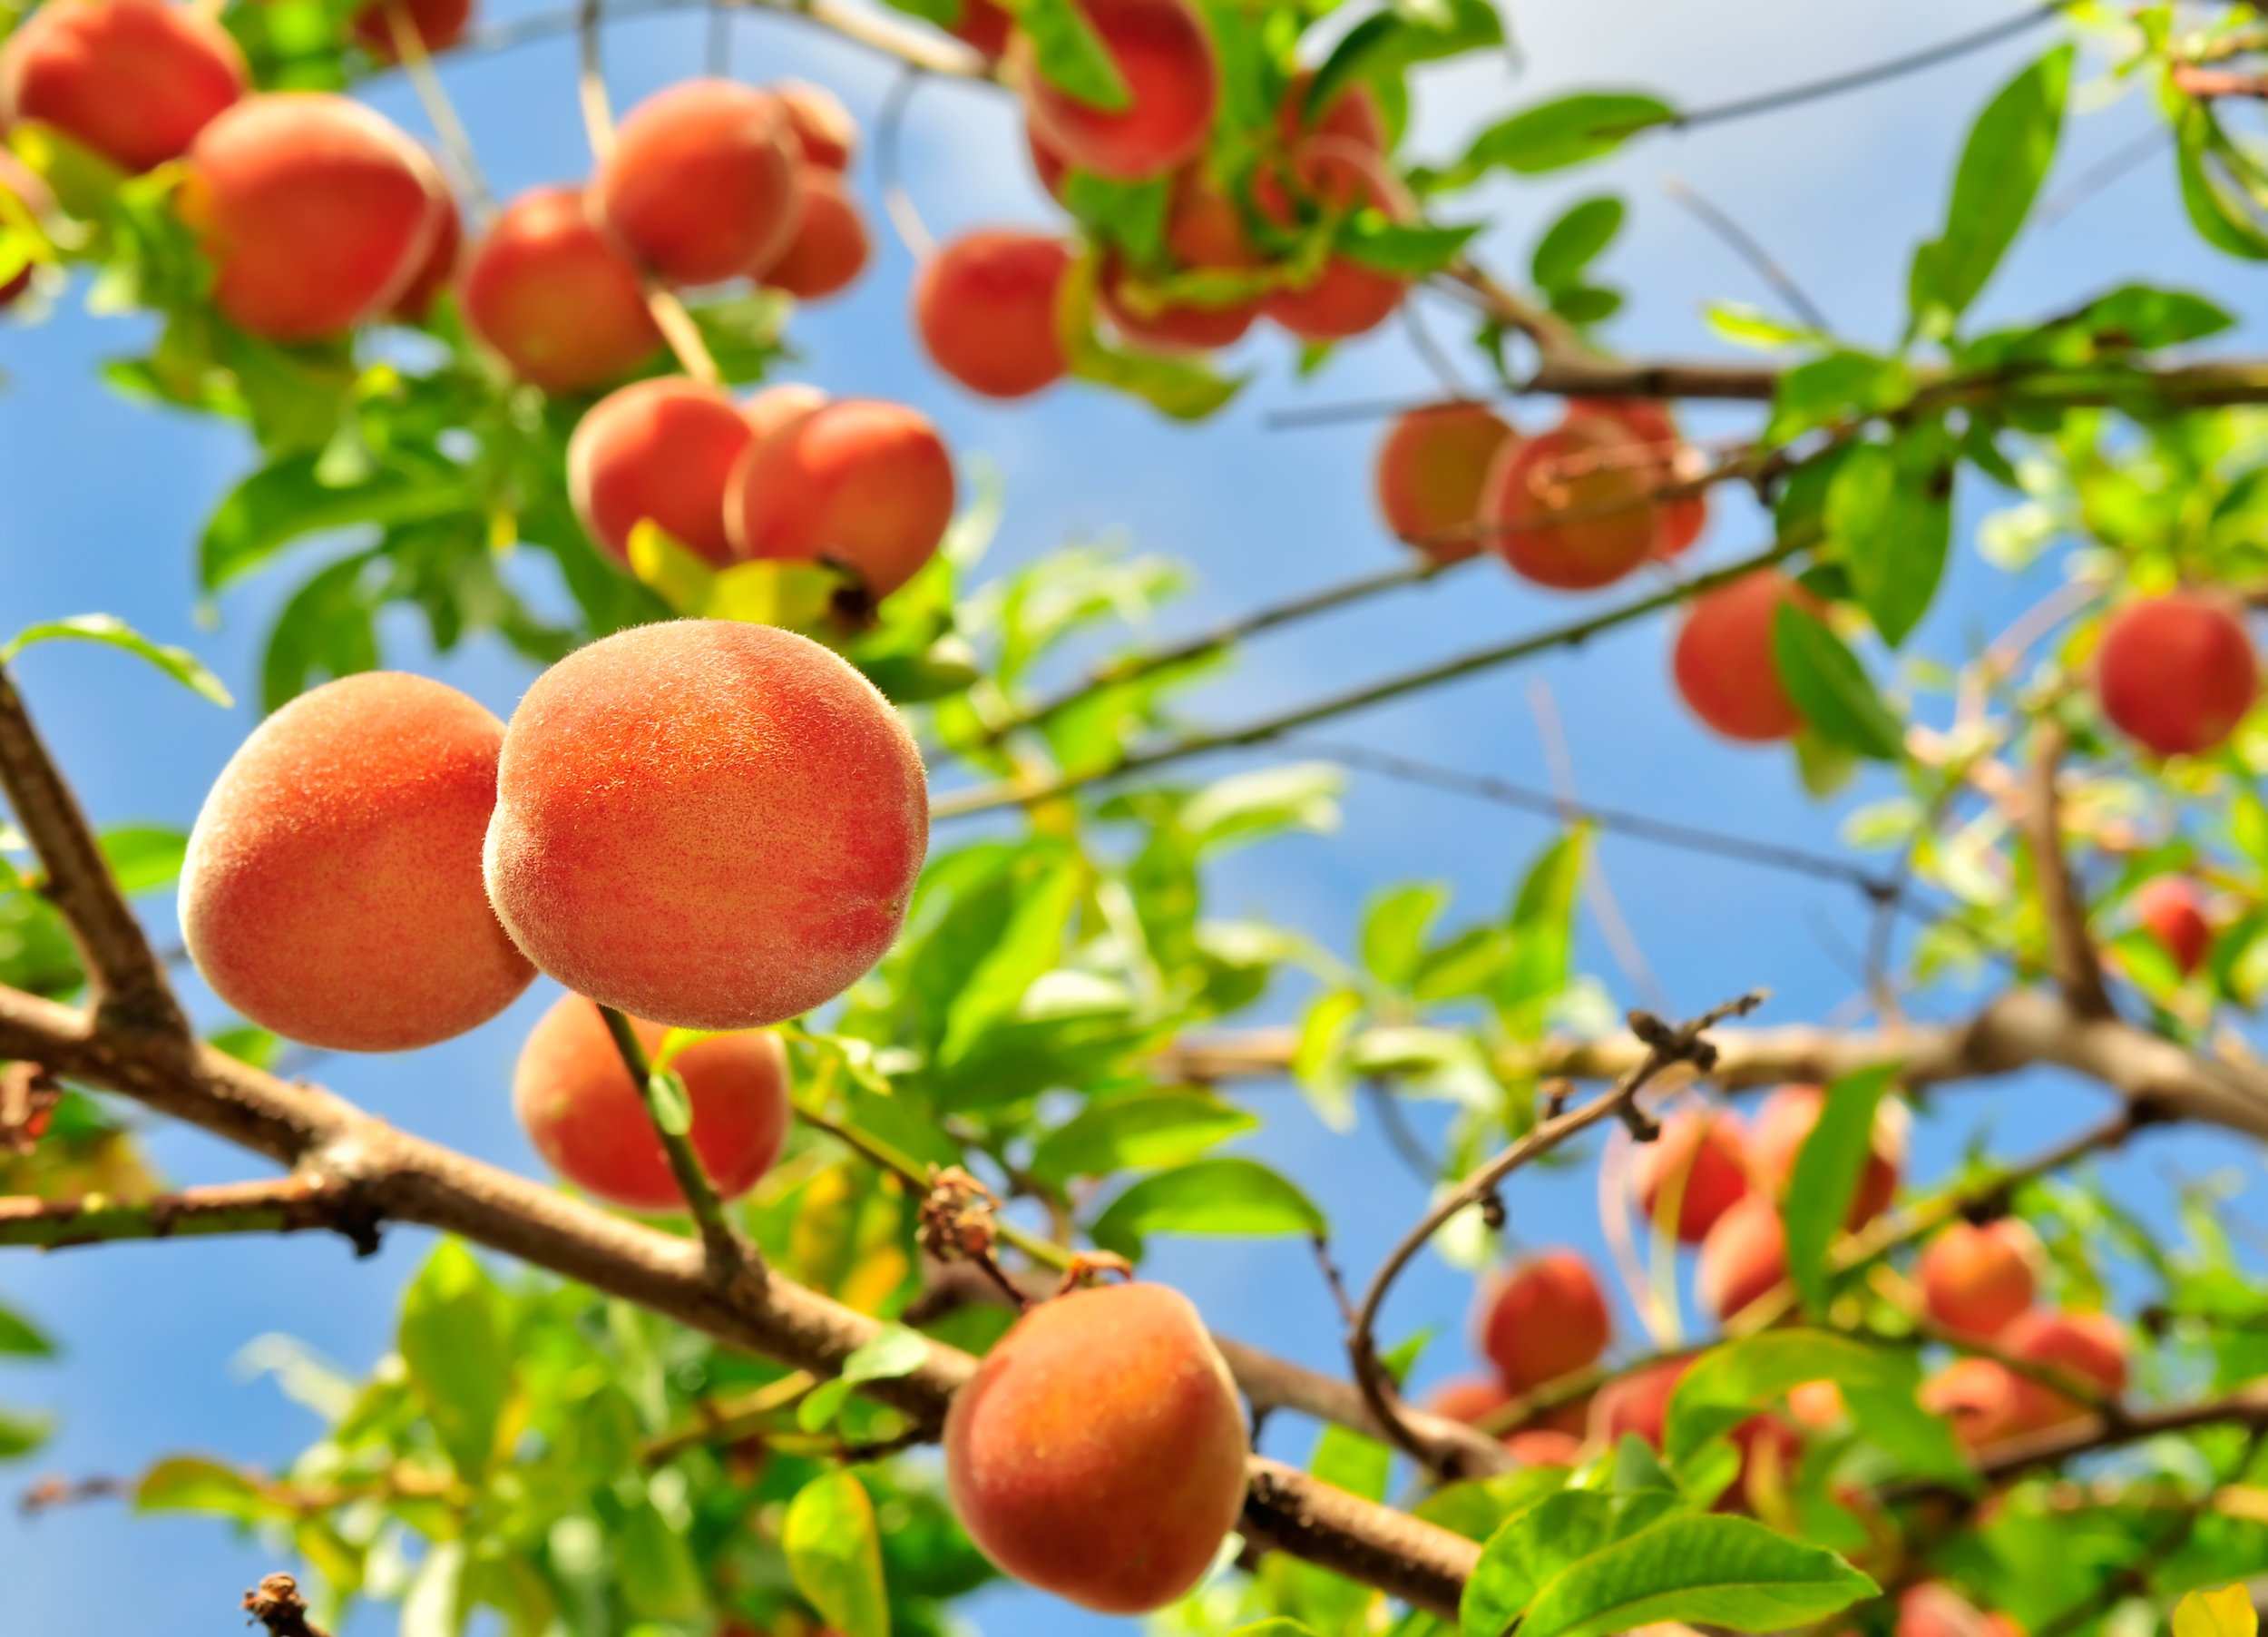 2 10 всех фруктов составляют персики. Персиковое дерево. Персики на ветке. Персиковый сад. Персик с веточкой.